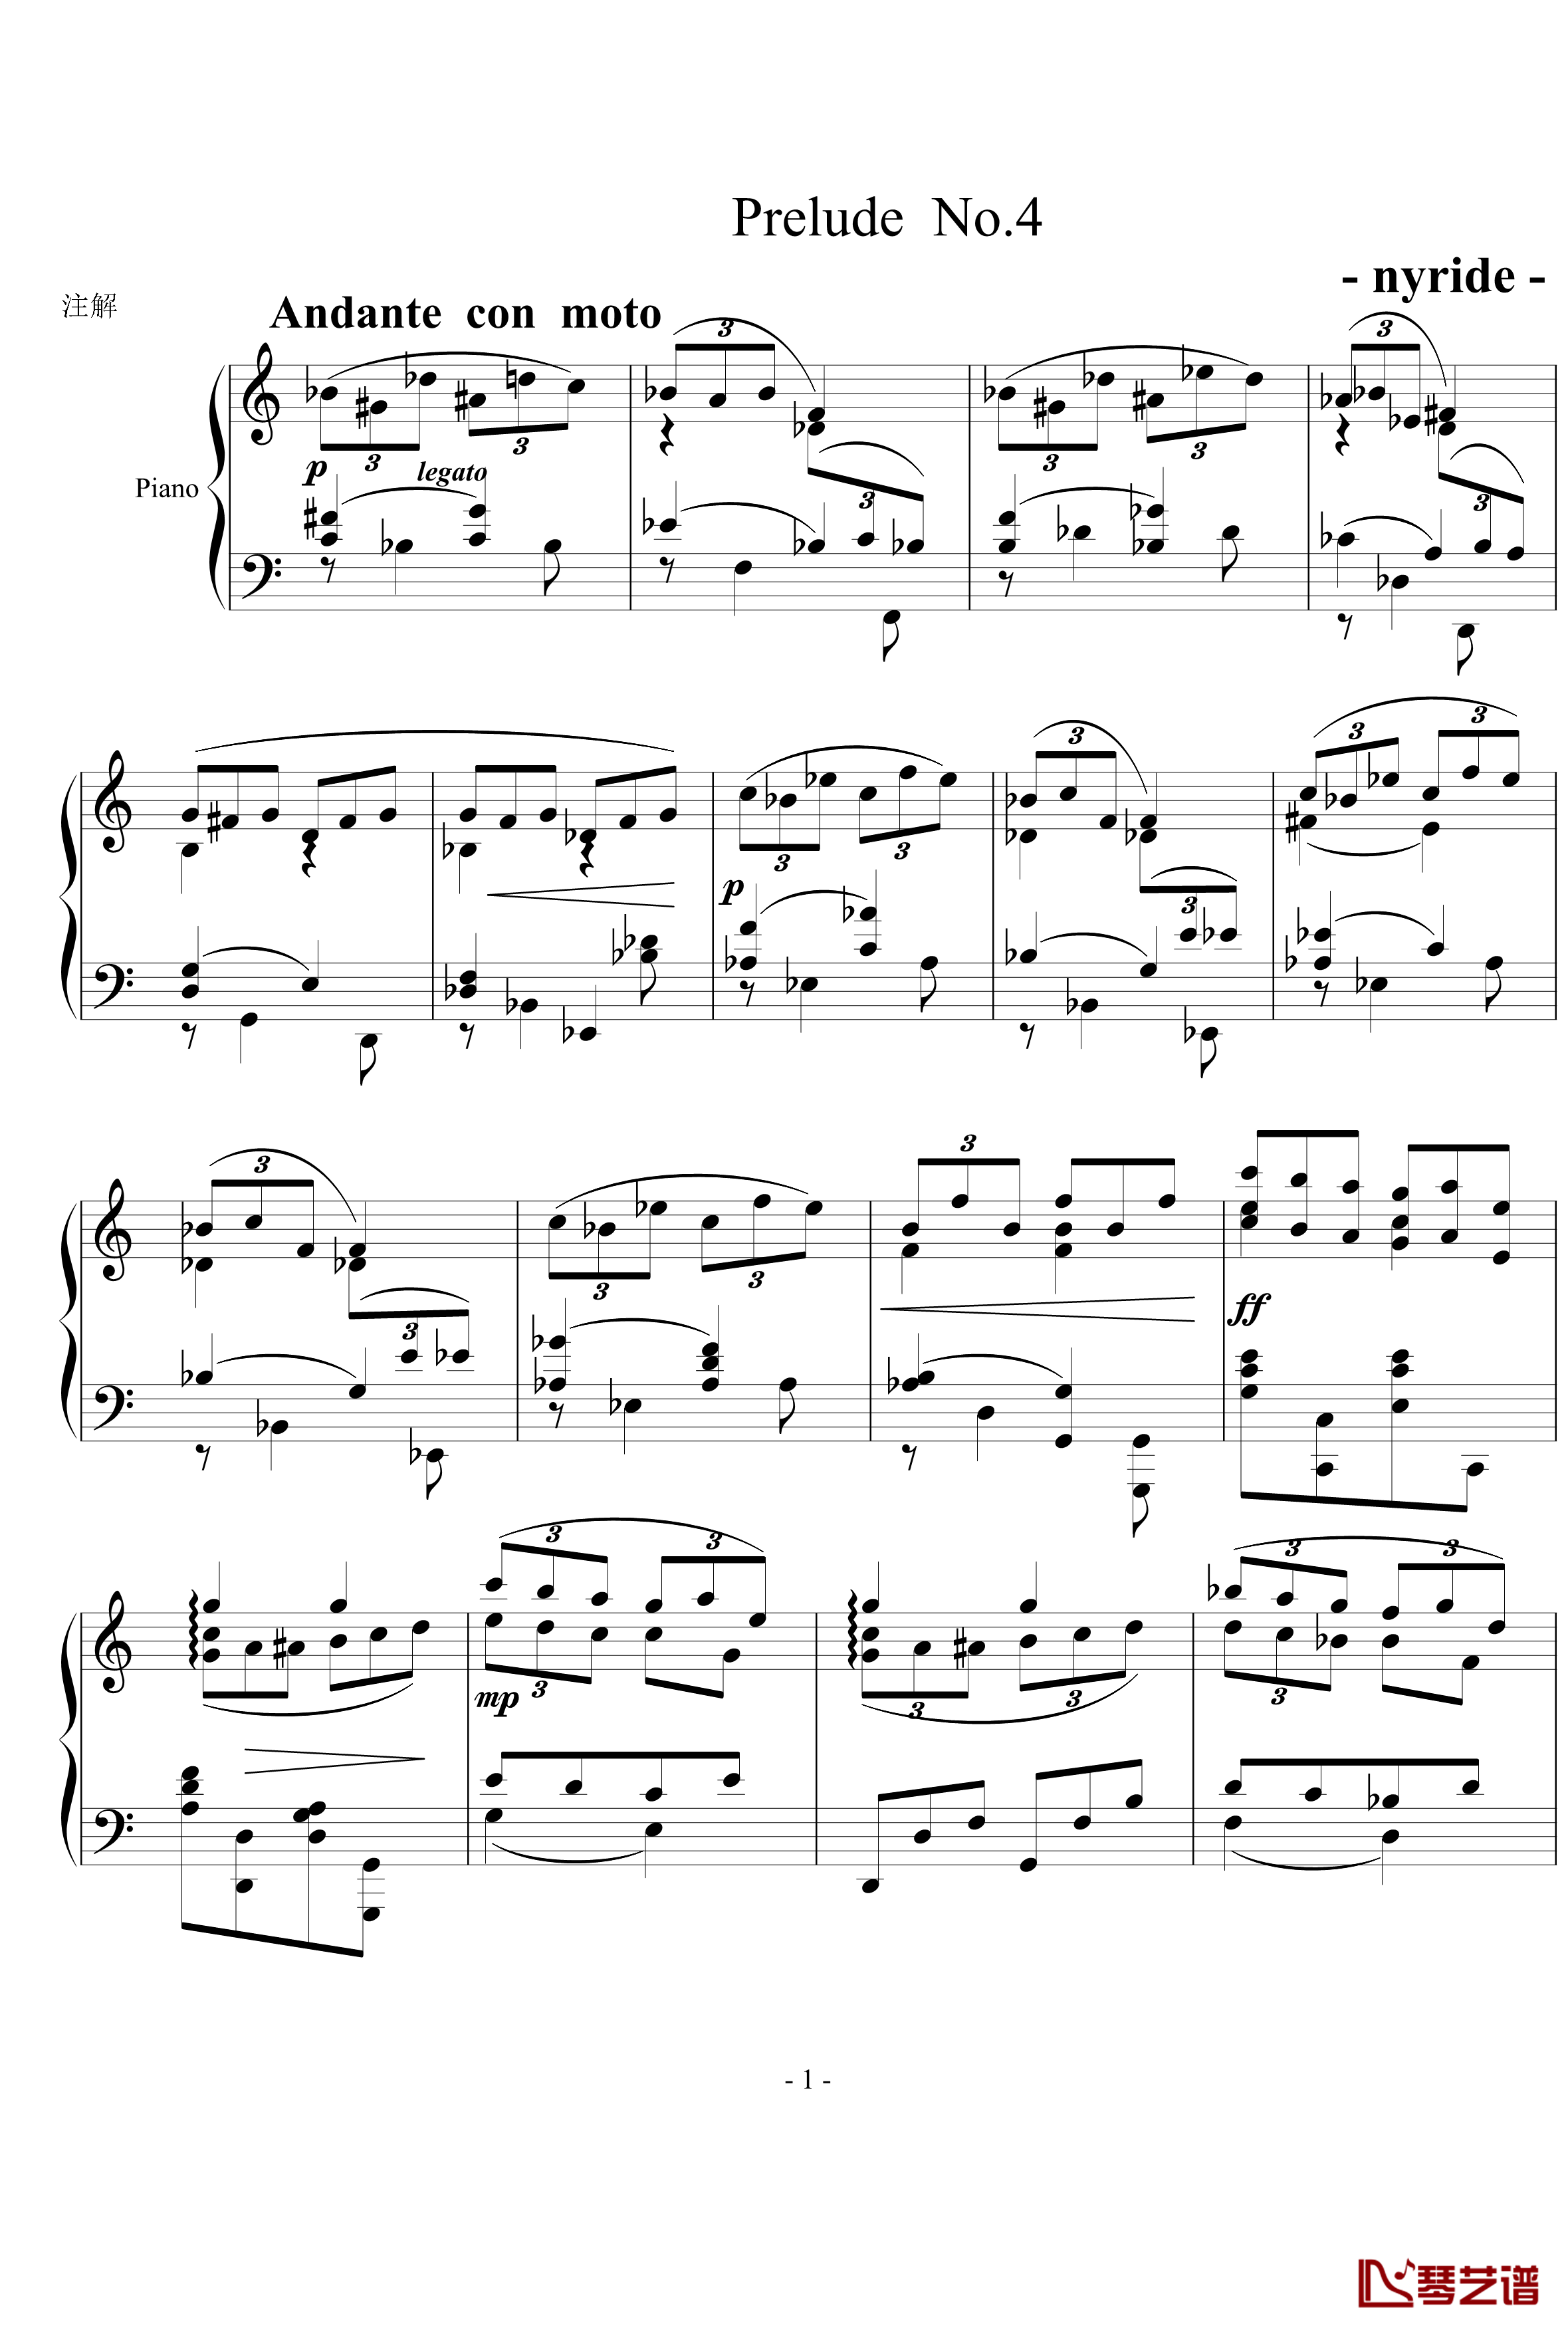 前奏曲4钢琴谱-nyride1